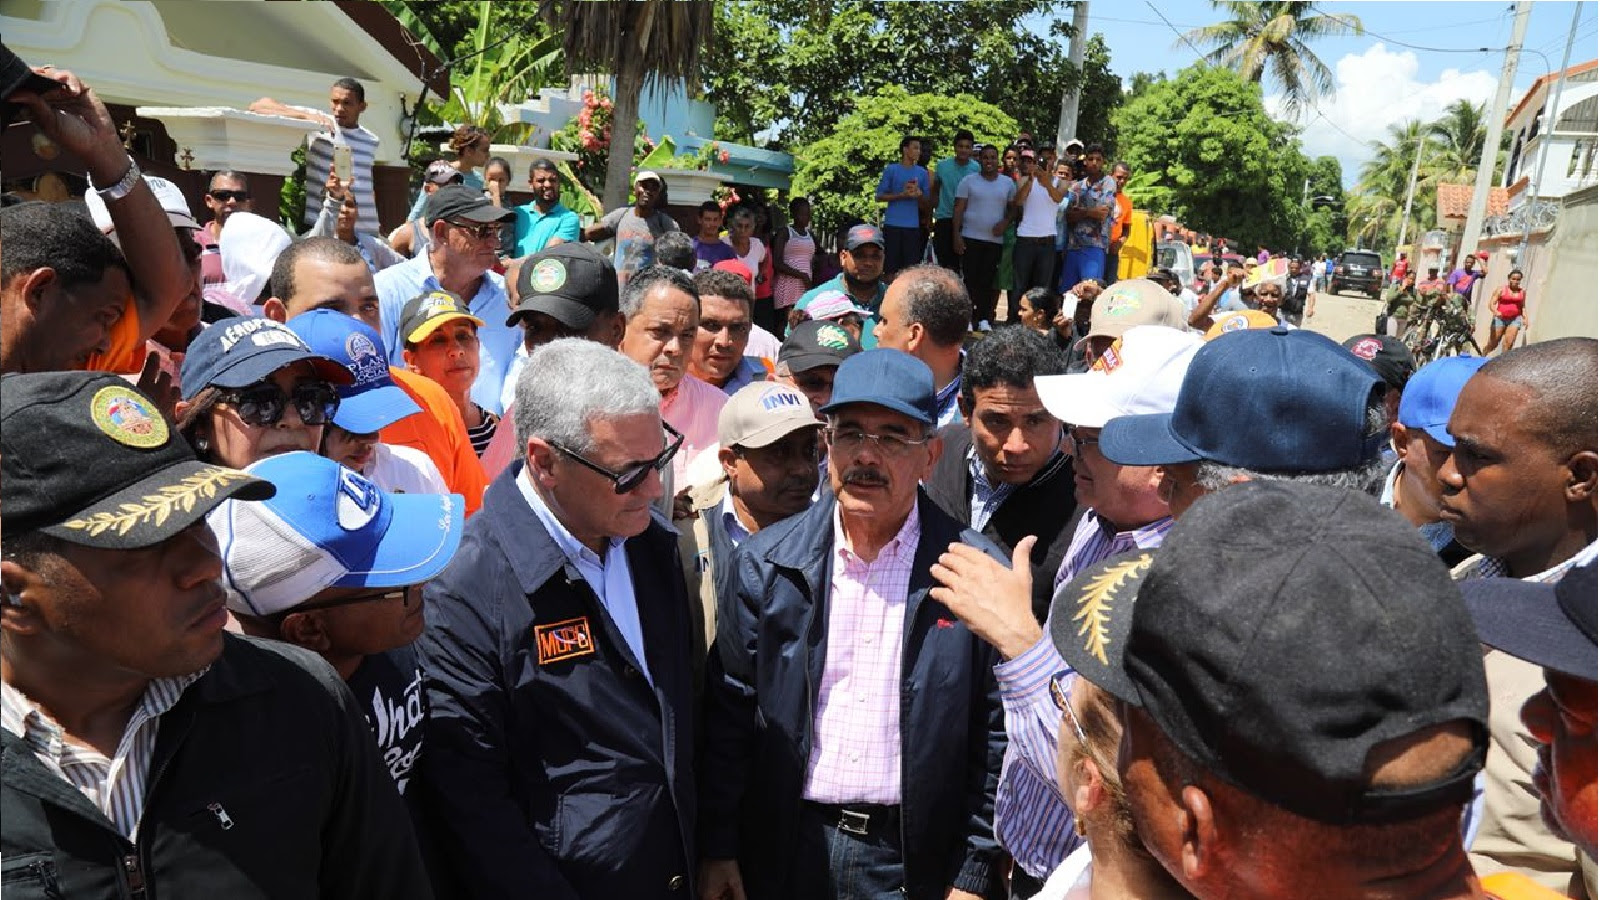  Presidente Danilo Medina recorre zonas afectadas de Montecristi y Duarte. Garantiza solución definitiva a comunidades